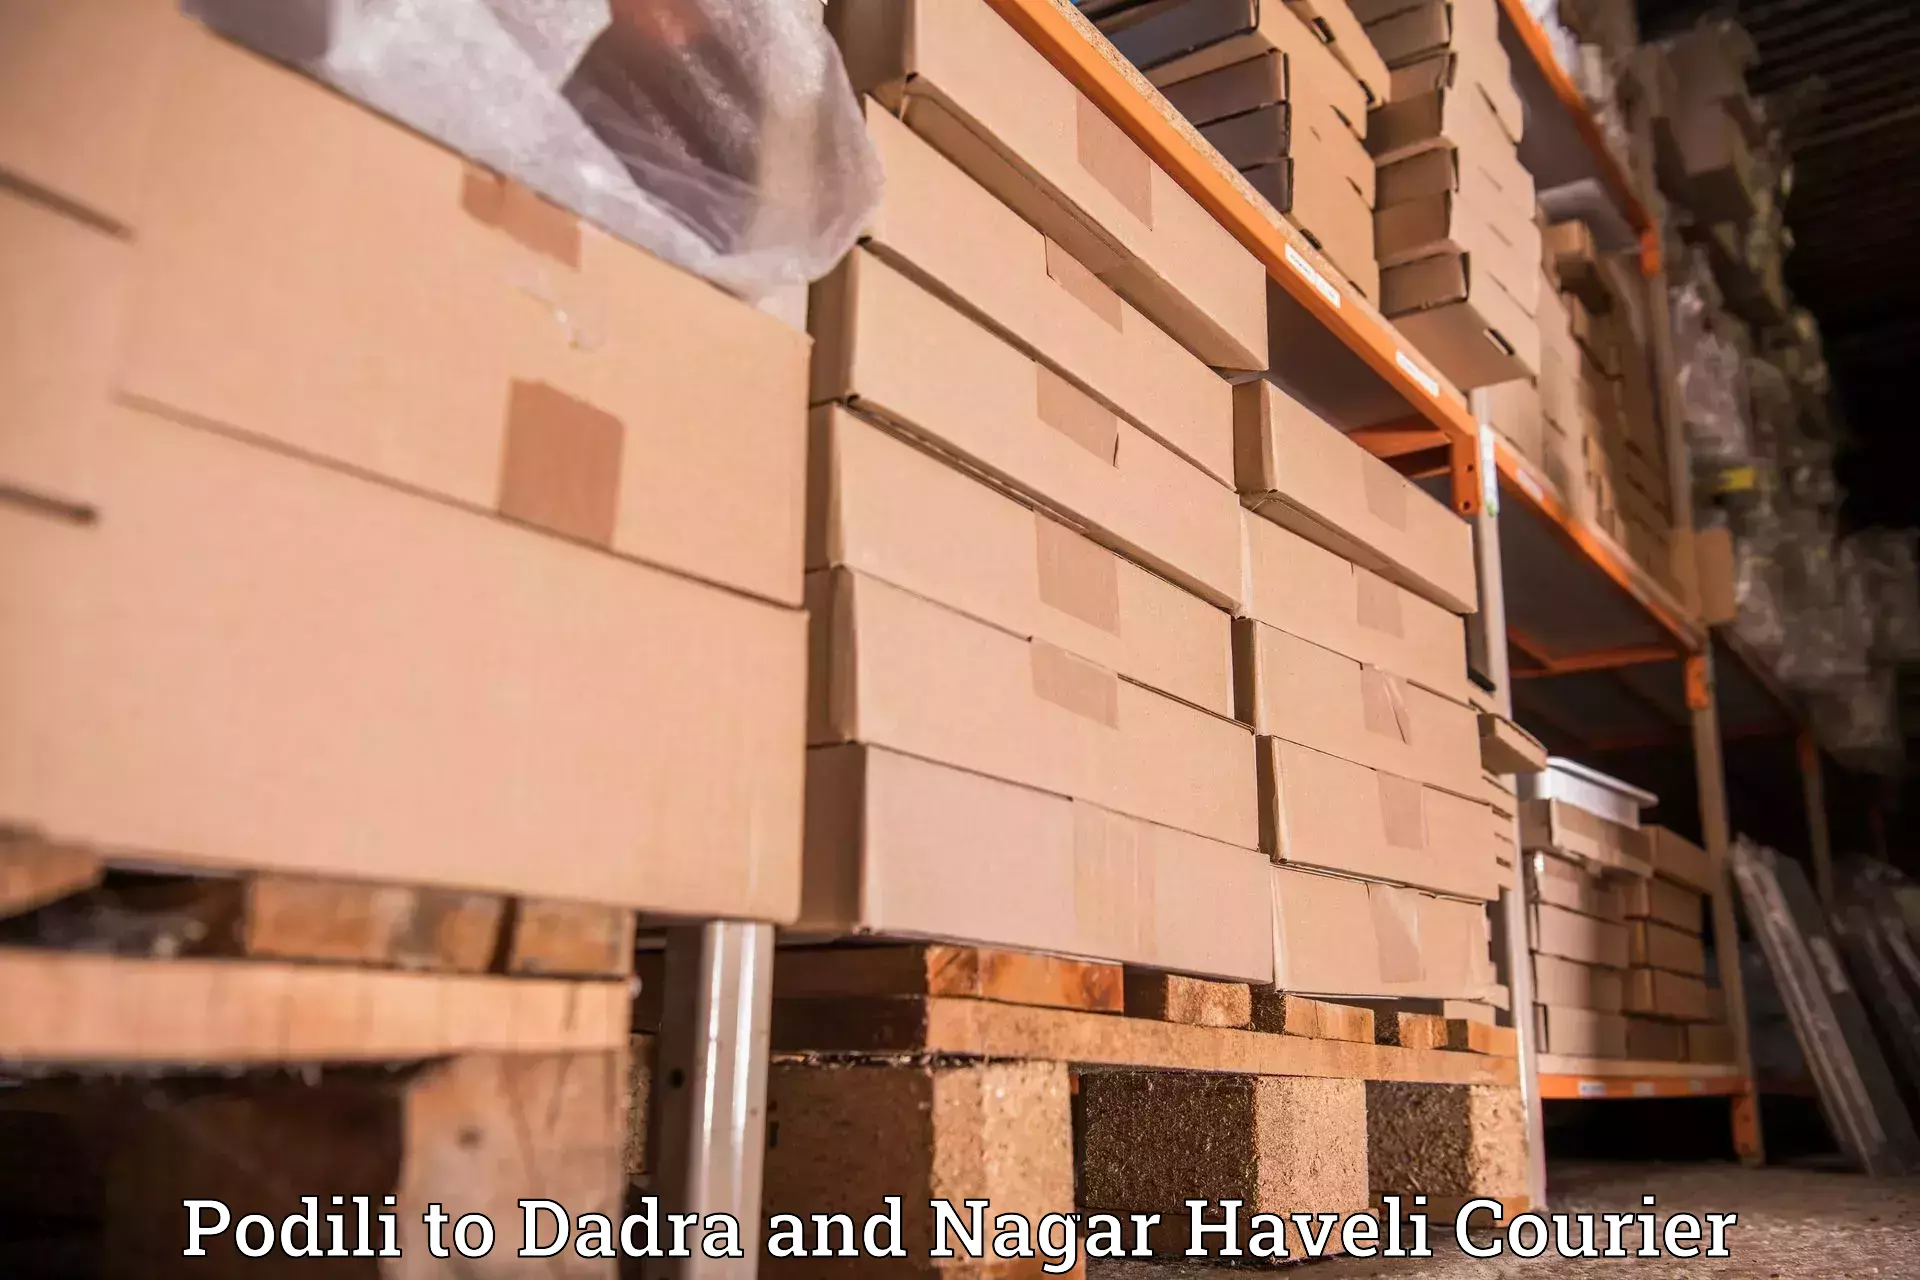 Modern delivery methods Podili to Dadra and Nagar Haveli